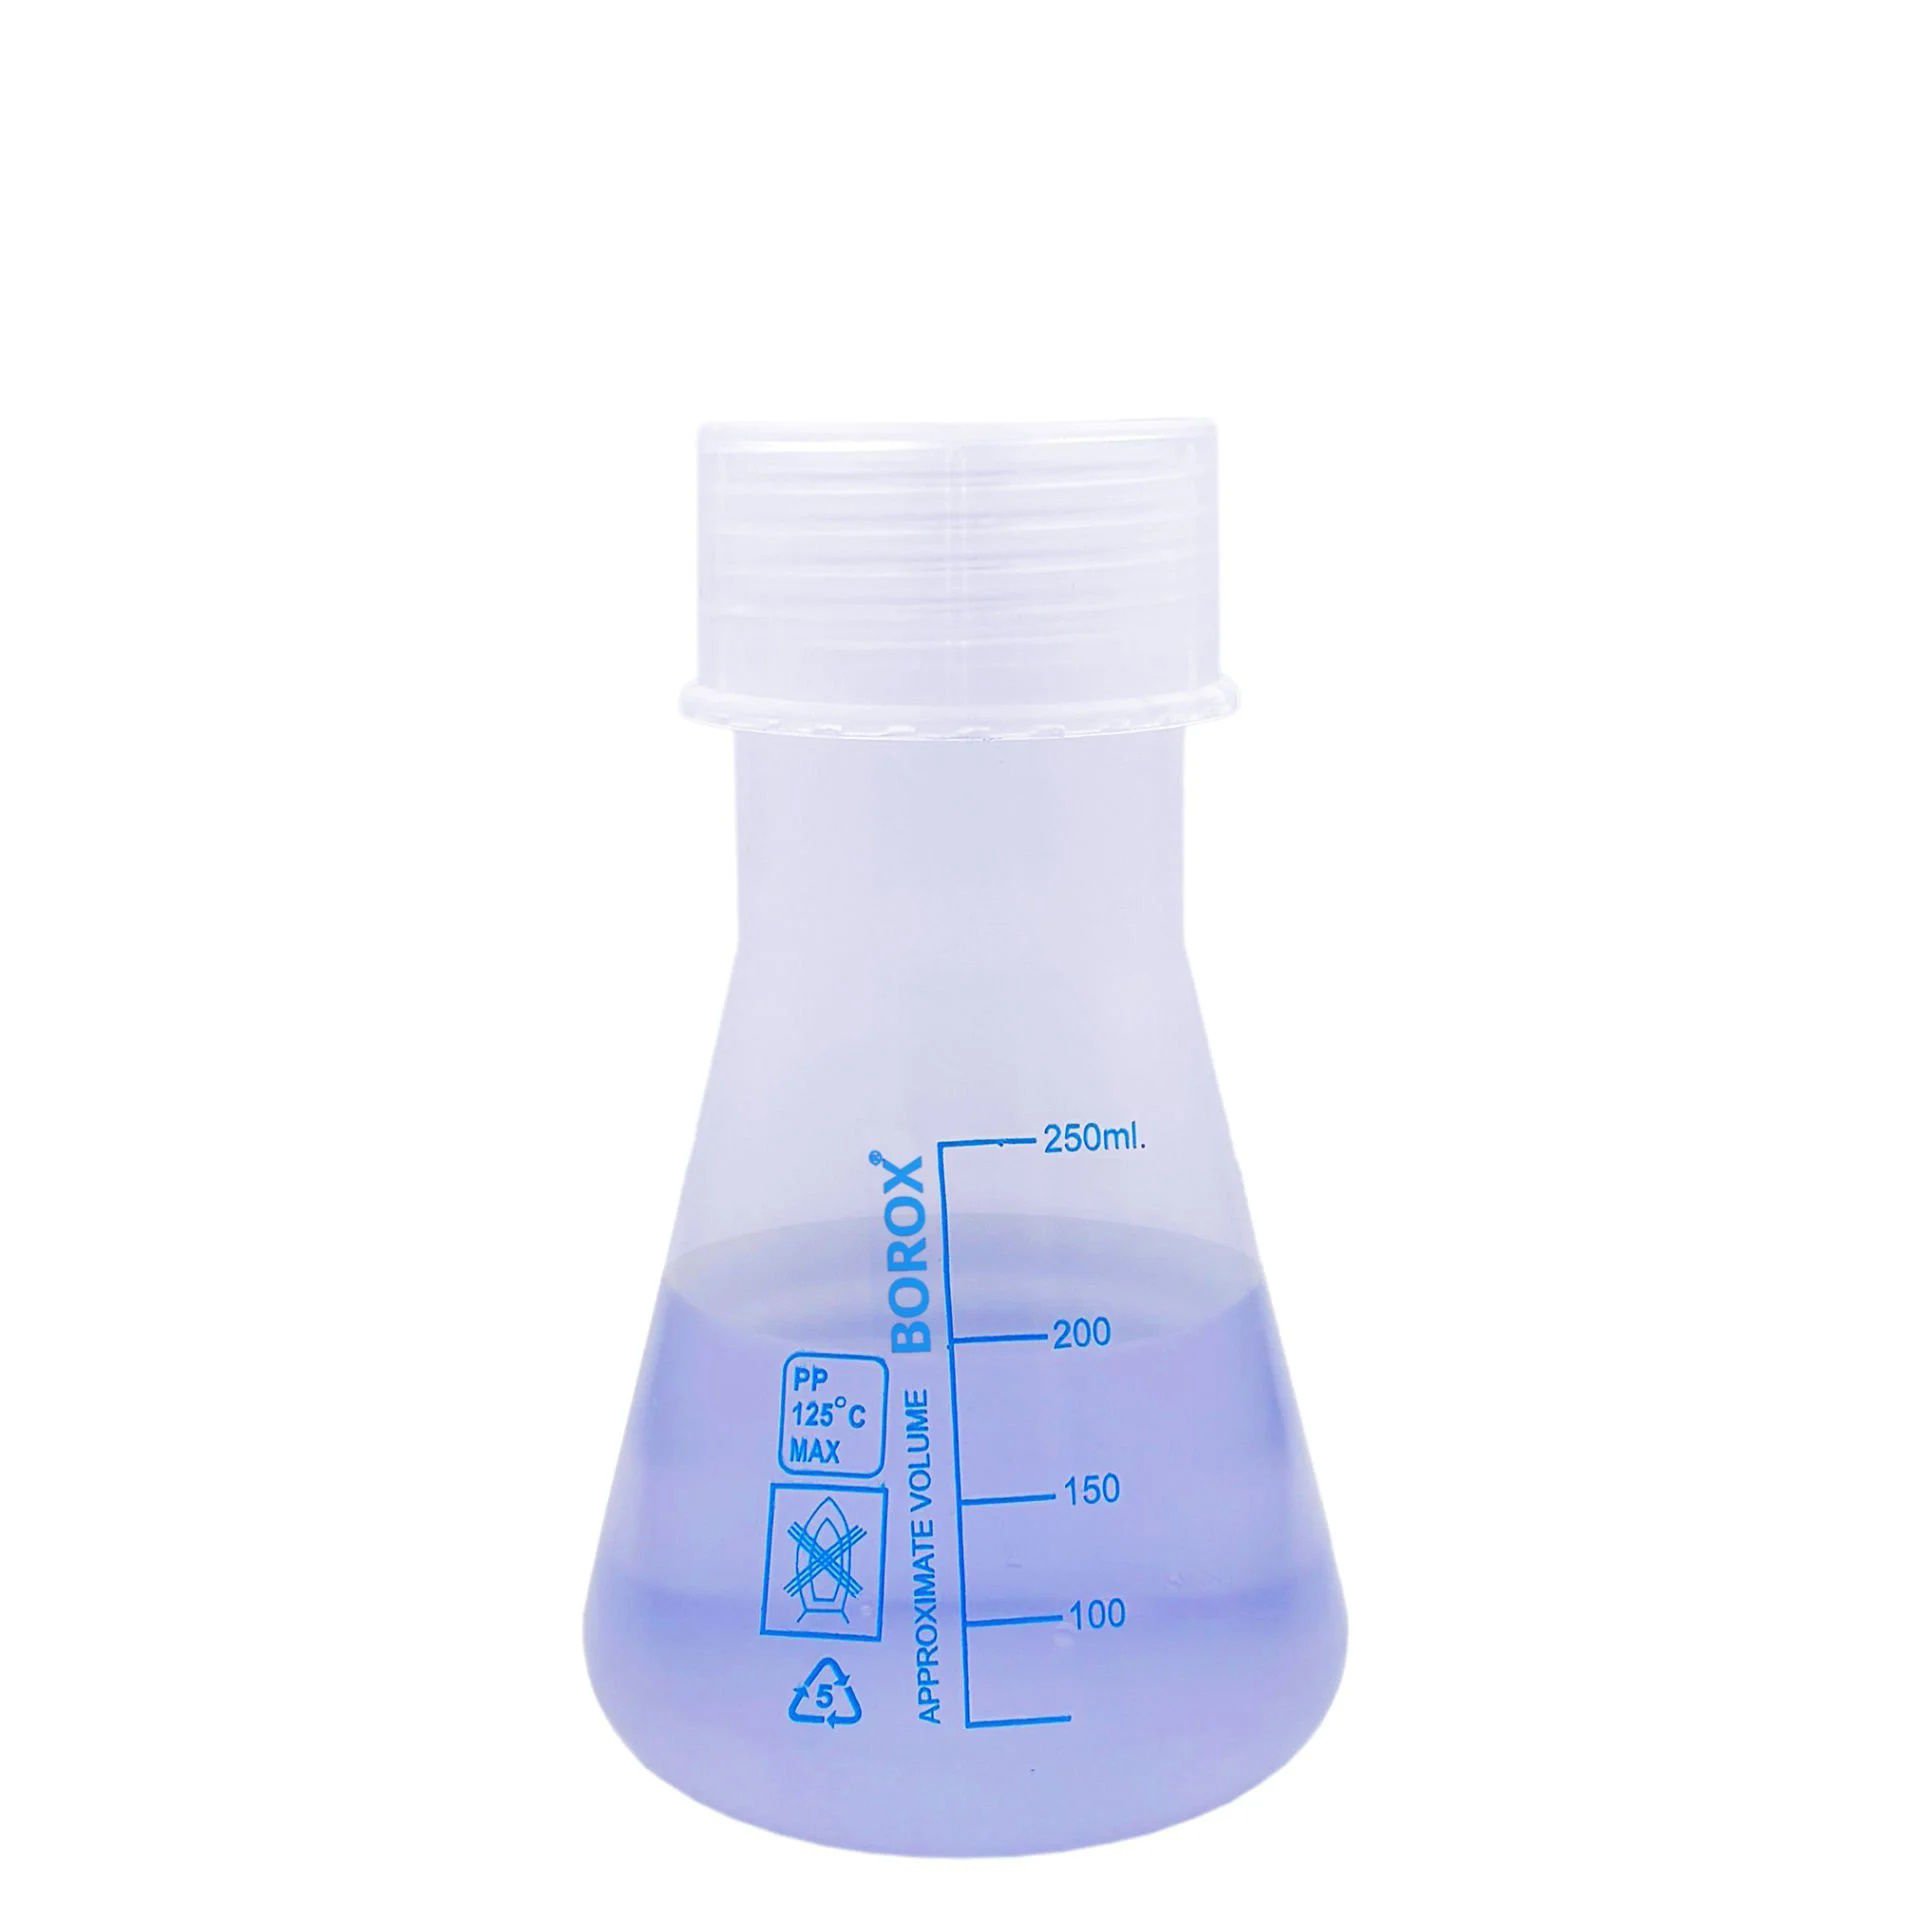 Borox Plastik Erlen 250 ml - Erlenmeyer Flask Vida Kapaklı - Mavi Skala